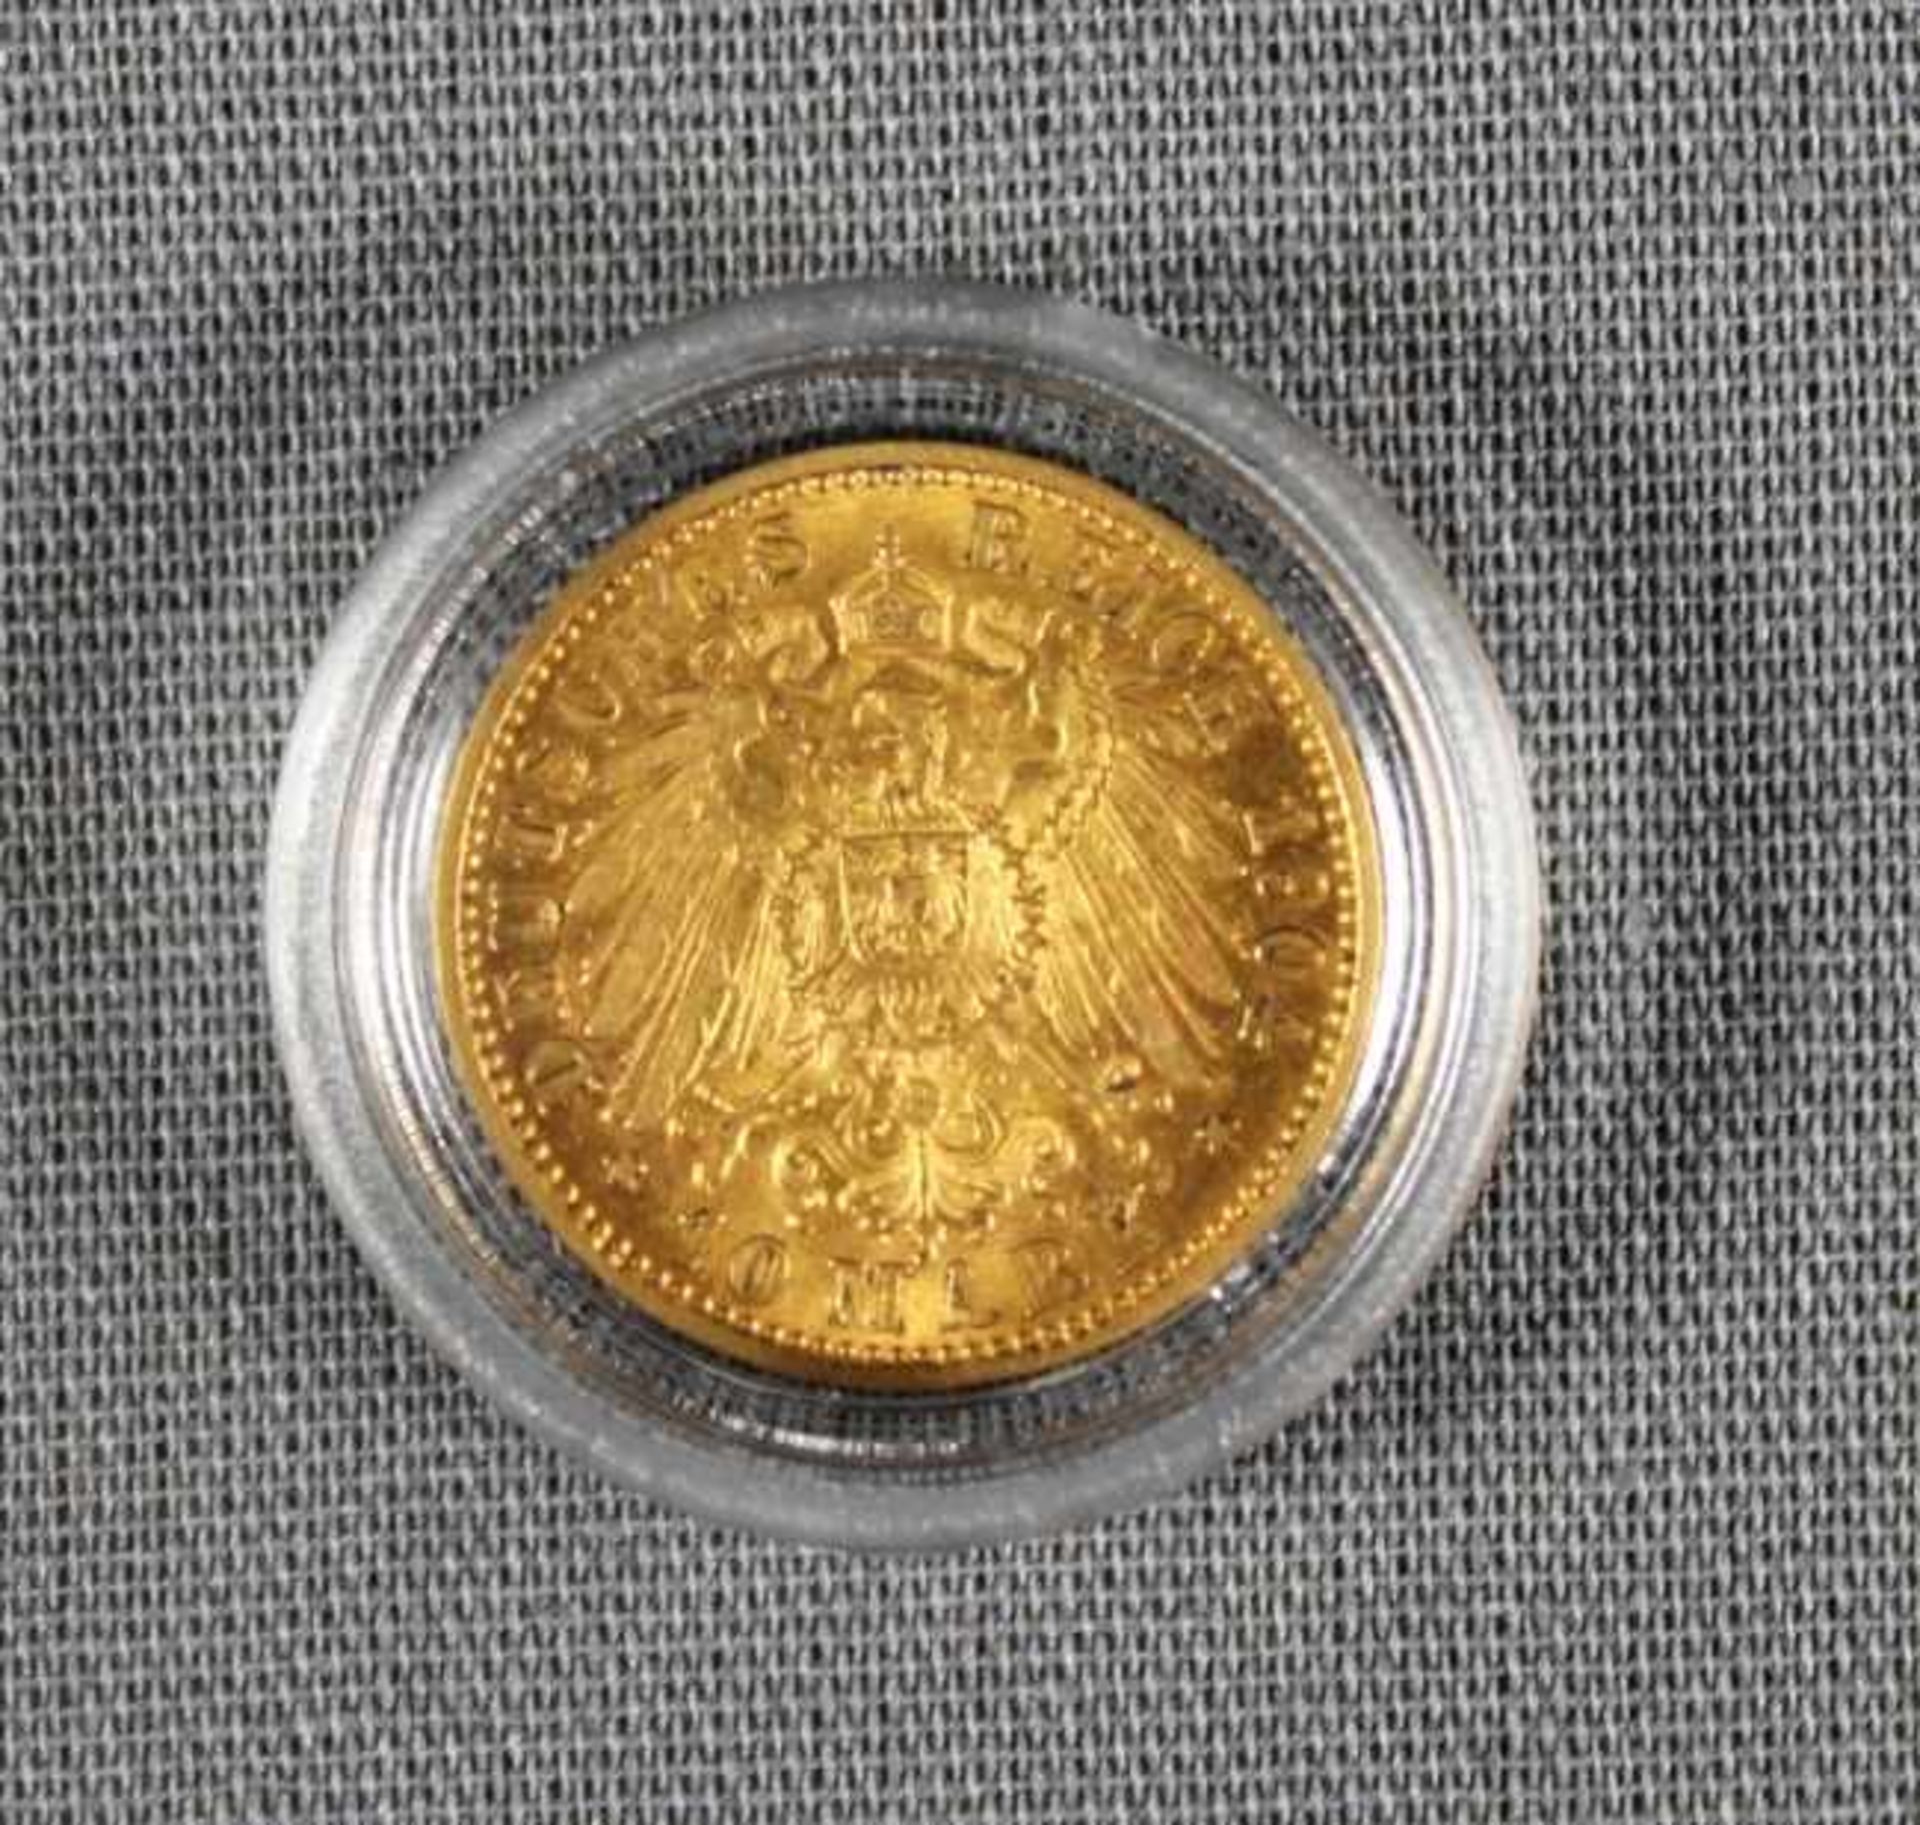 1 Münze Gold (900/000) von 1904 "10 Mark, Wilhelm II. Kaiser König v. Preussen 1888-1918", - Bild 2 aus 2